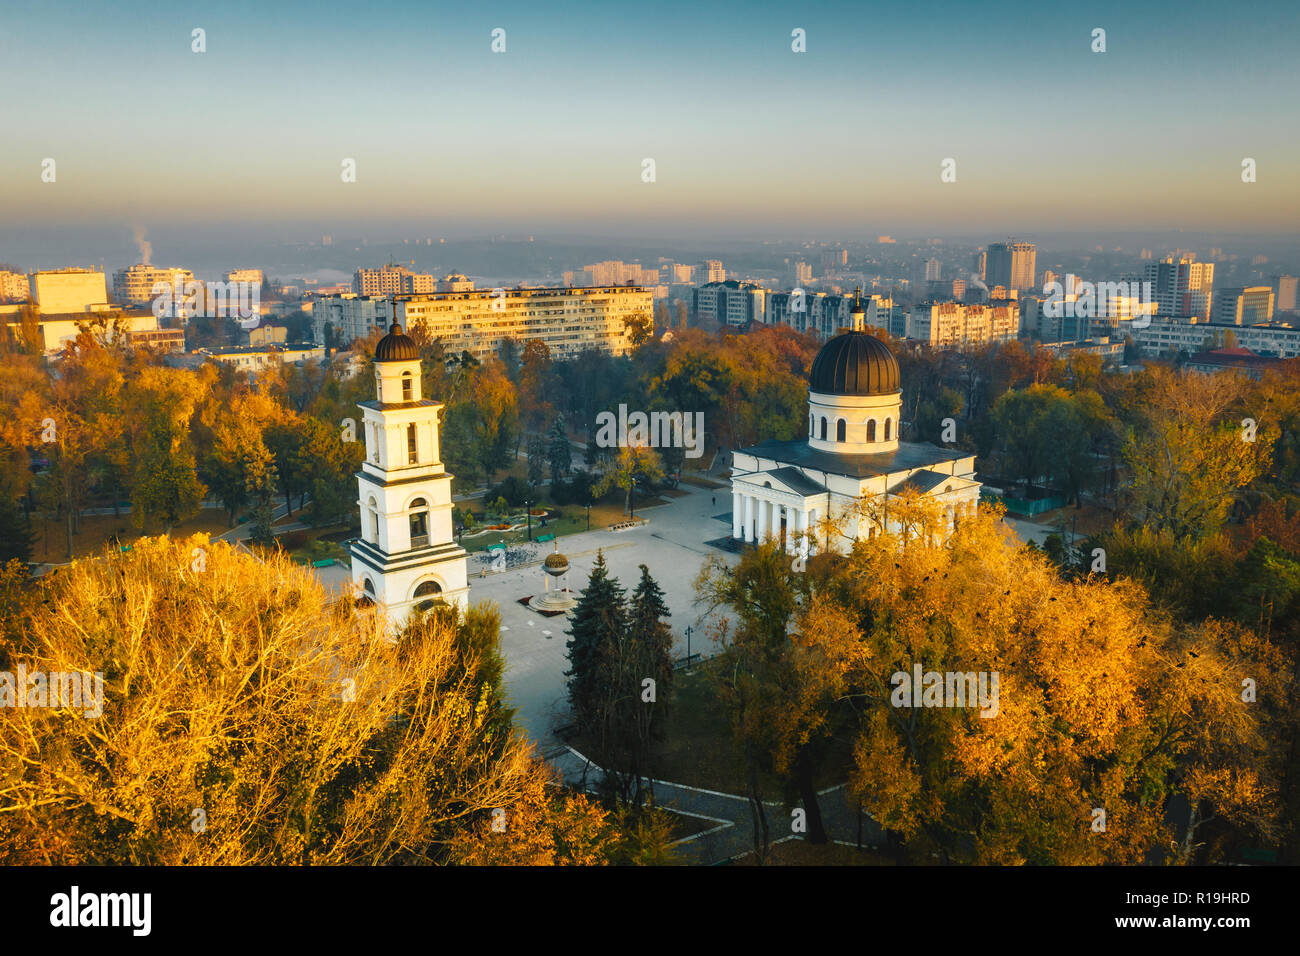 Tramonto a Chisinau, Repubblica di Moldavia. Fotografia aerea Foto Stock